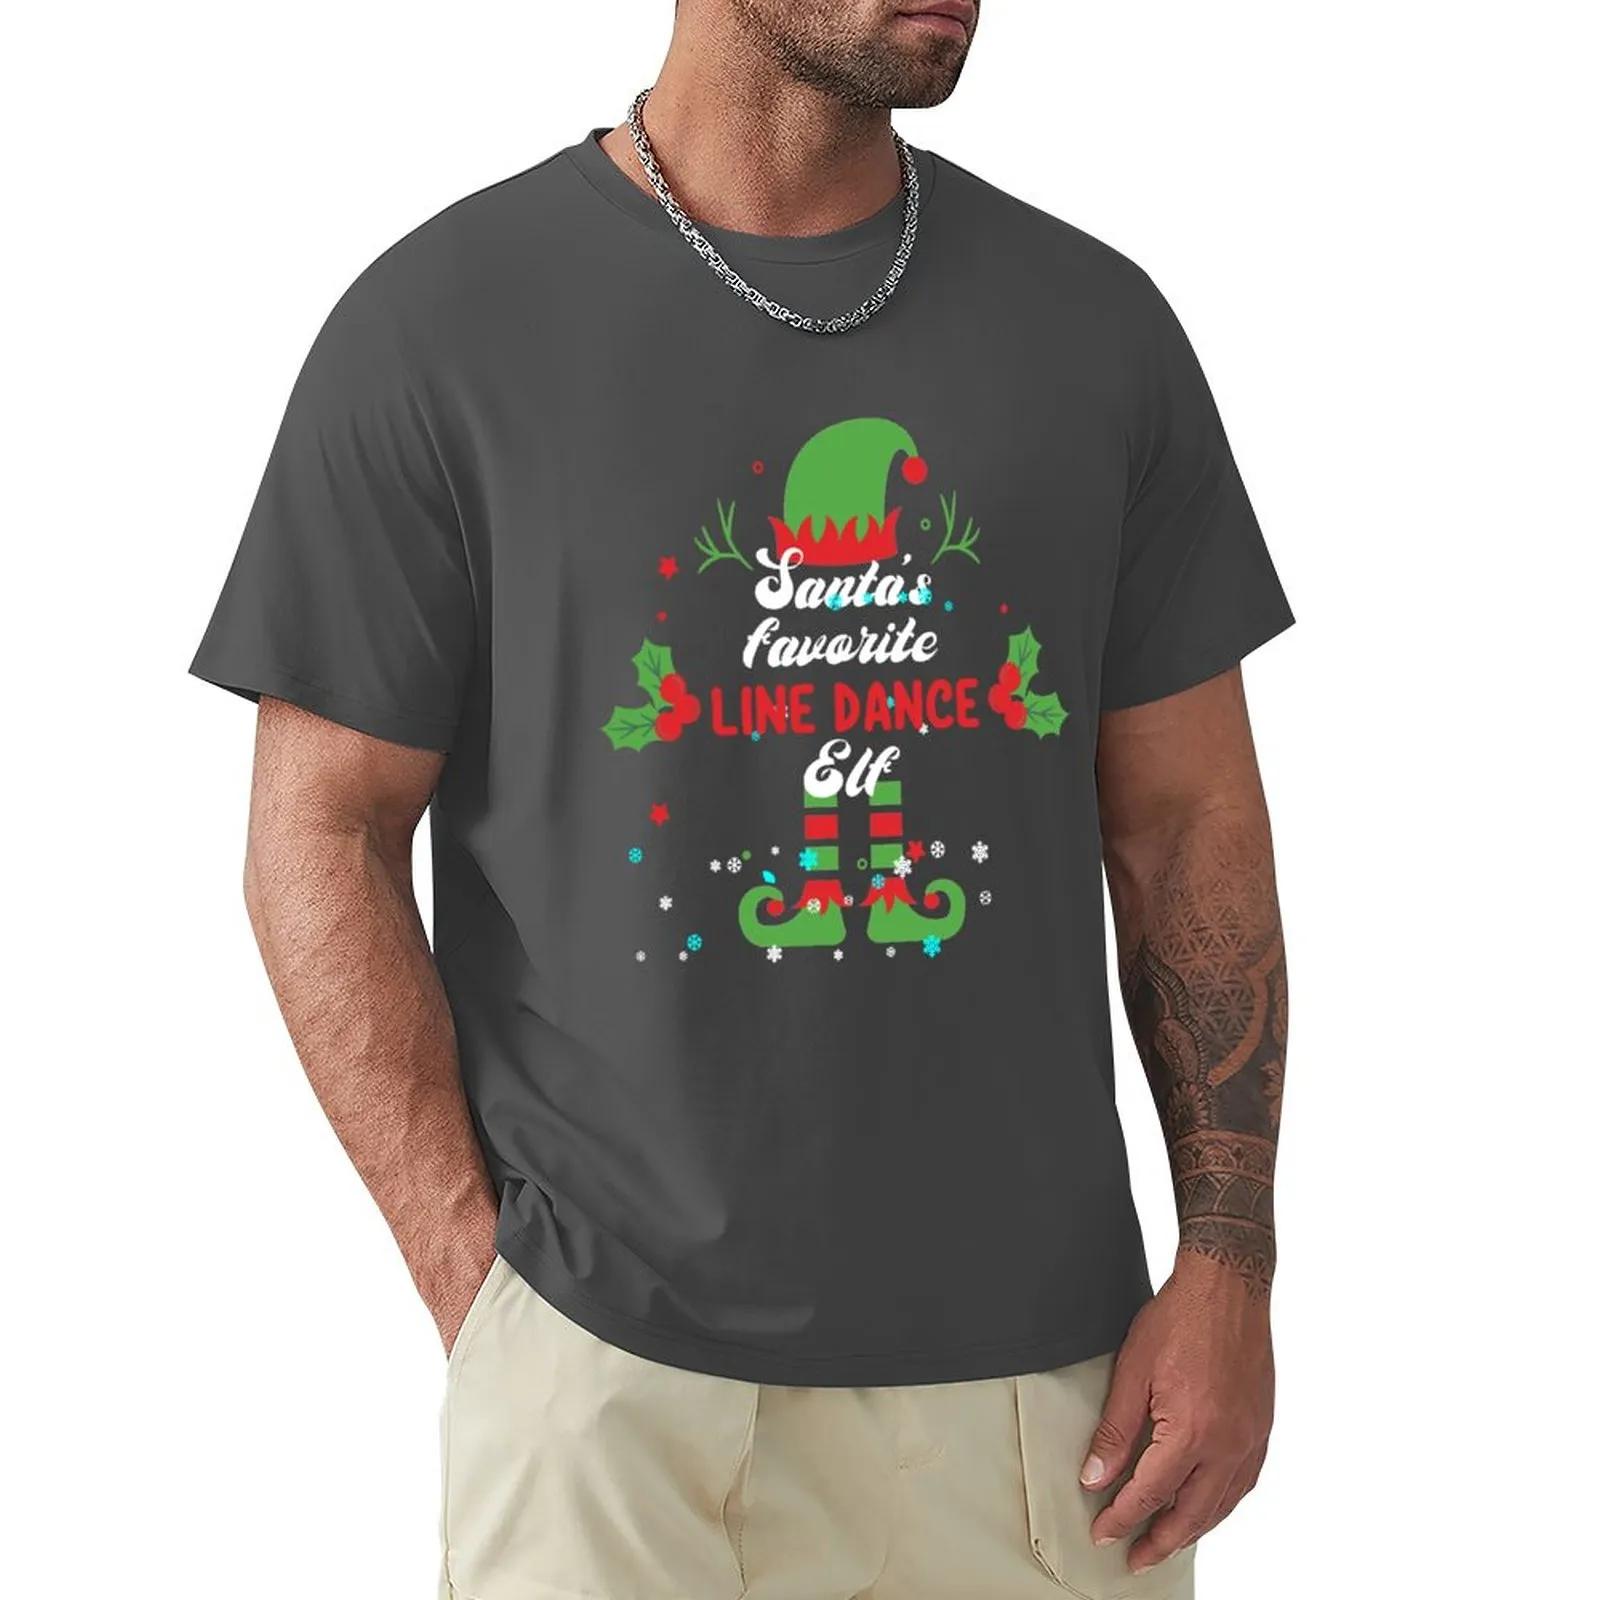 남성용 크리스마스 라인 댄스 라인 댄싱 티셔츠, 승화 티셔츠, 재미있는 티셔츠, 애니메이션 빈티지 티셔츠